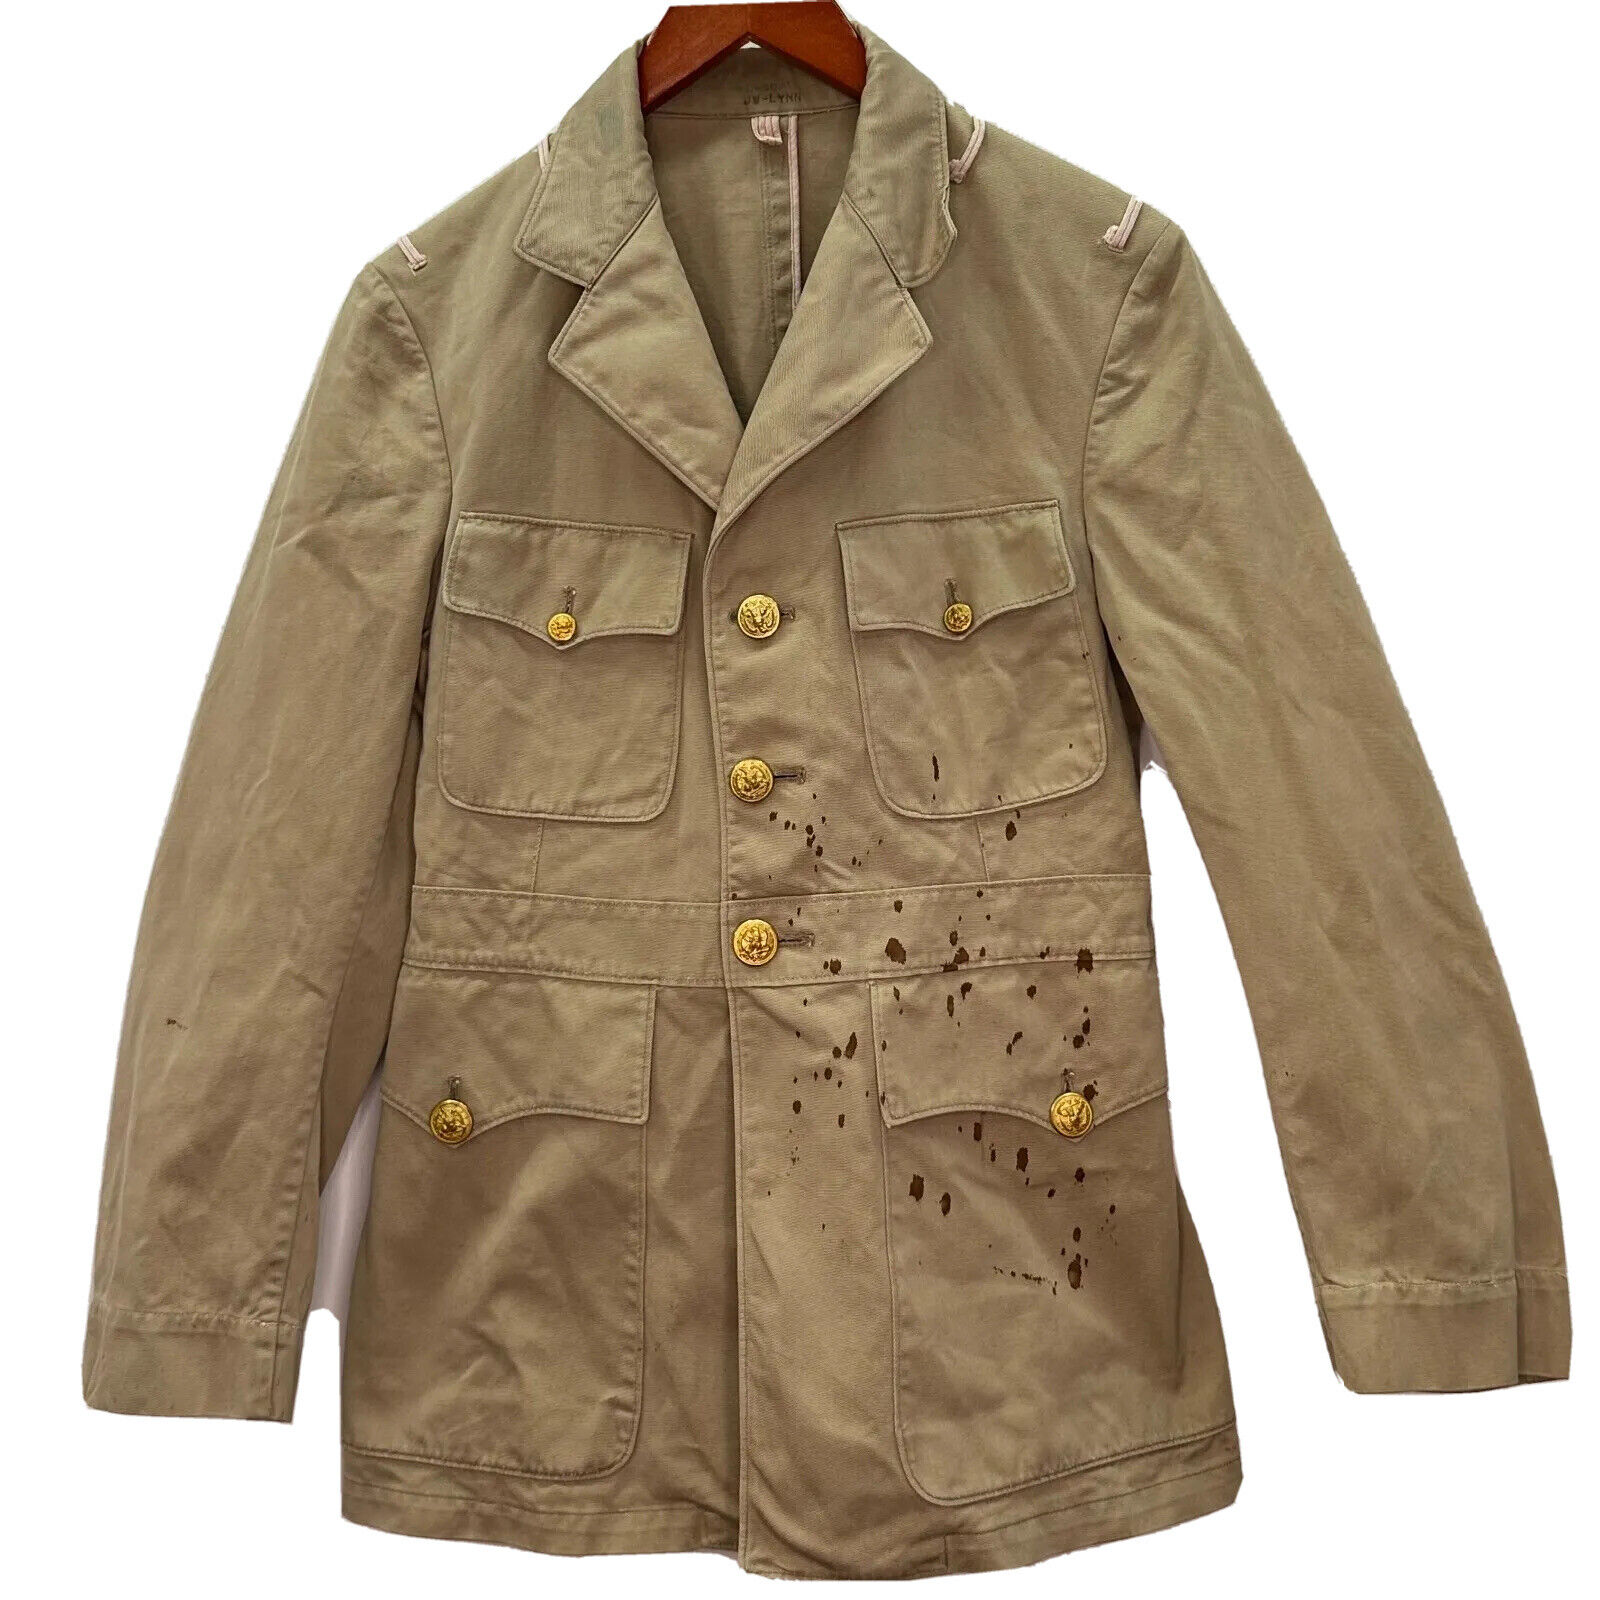 WWII WW2 US Navy Khaki Jacket Officer Cotton Serge Coat Military Uniform Battle 